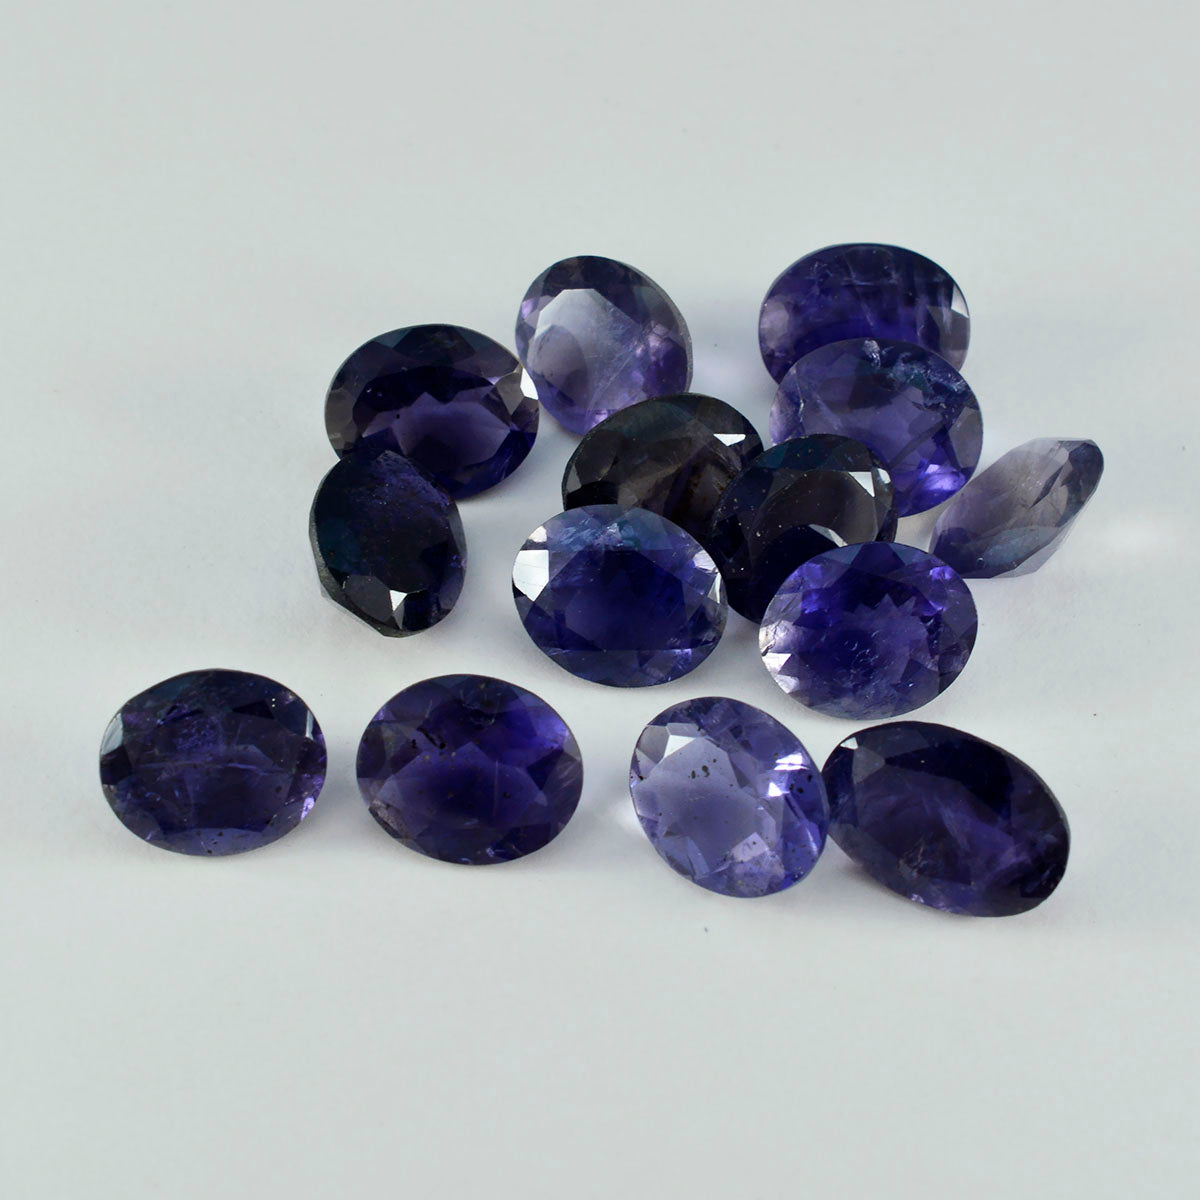 Riyogems 1 pc iolite bleue à facettes 8x10 mm forme ovale aa qualité gemme en vrac